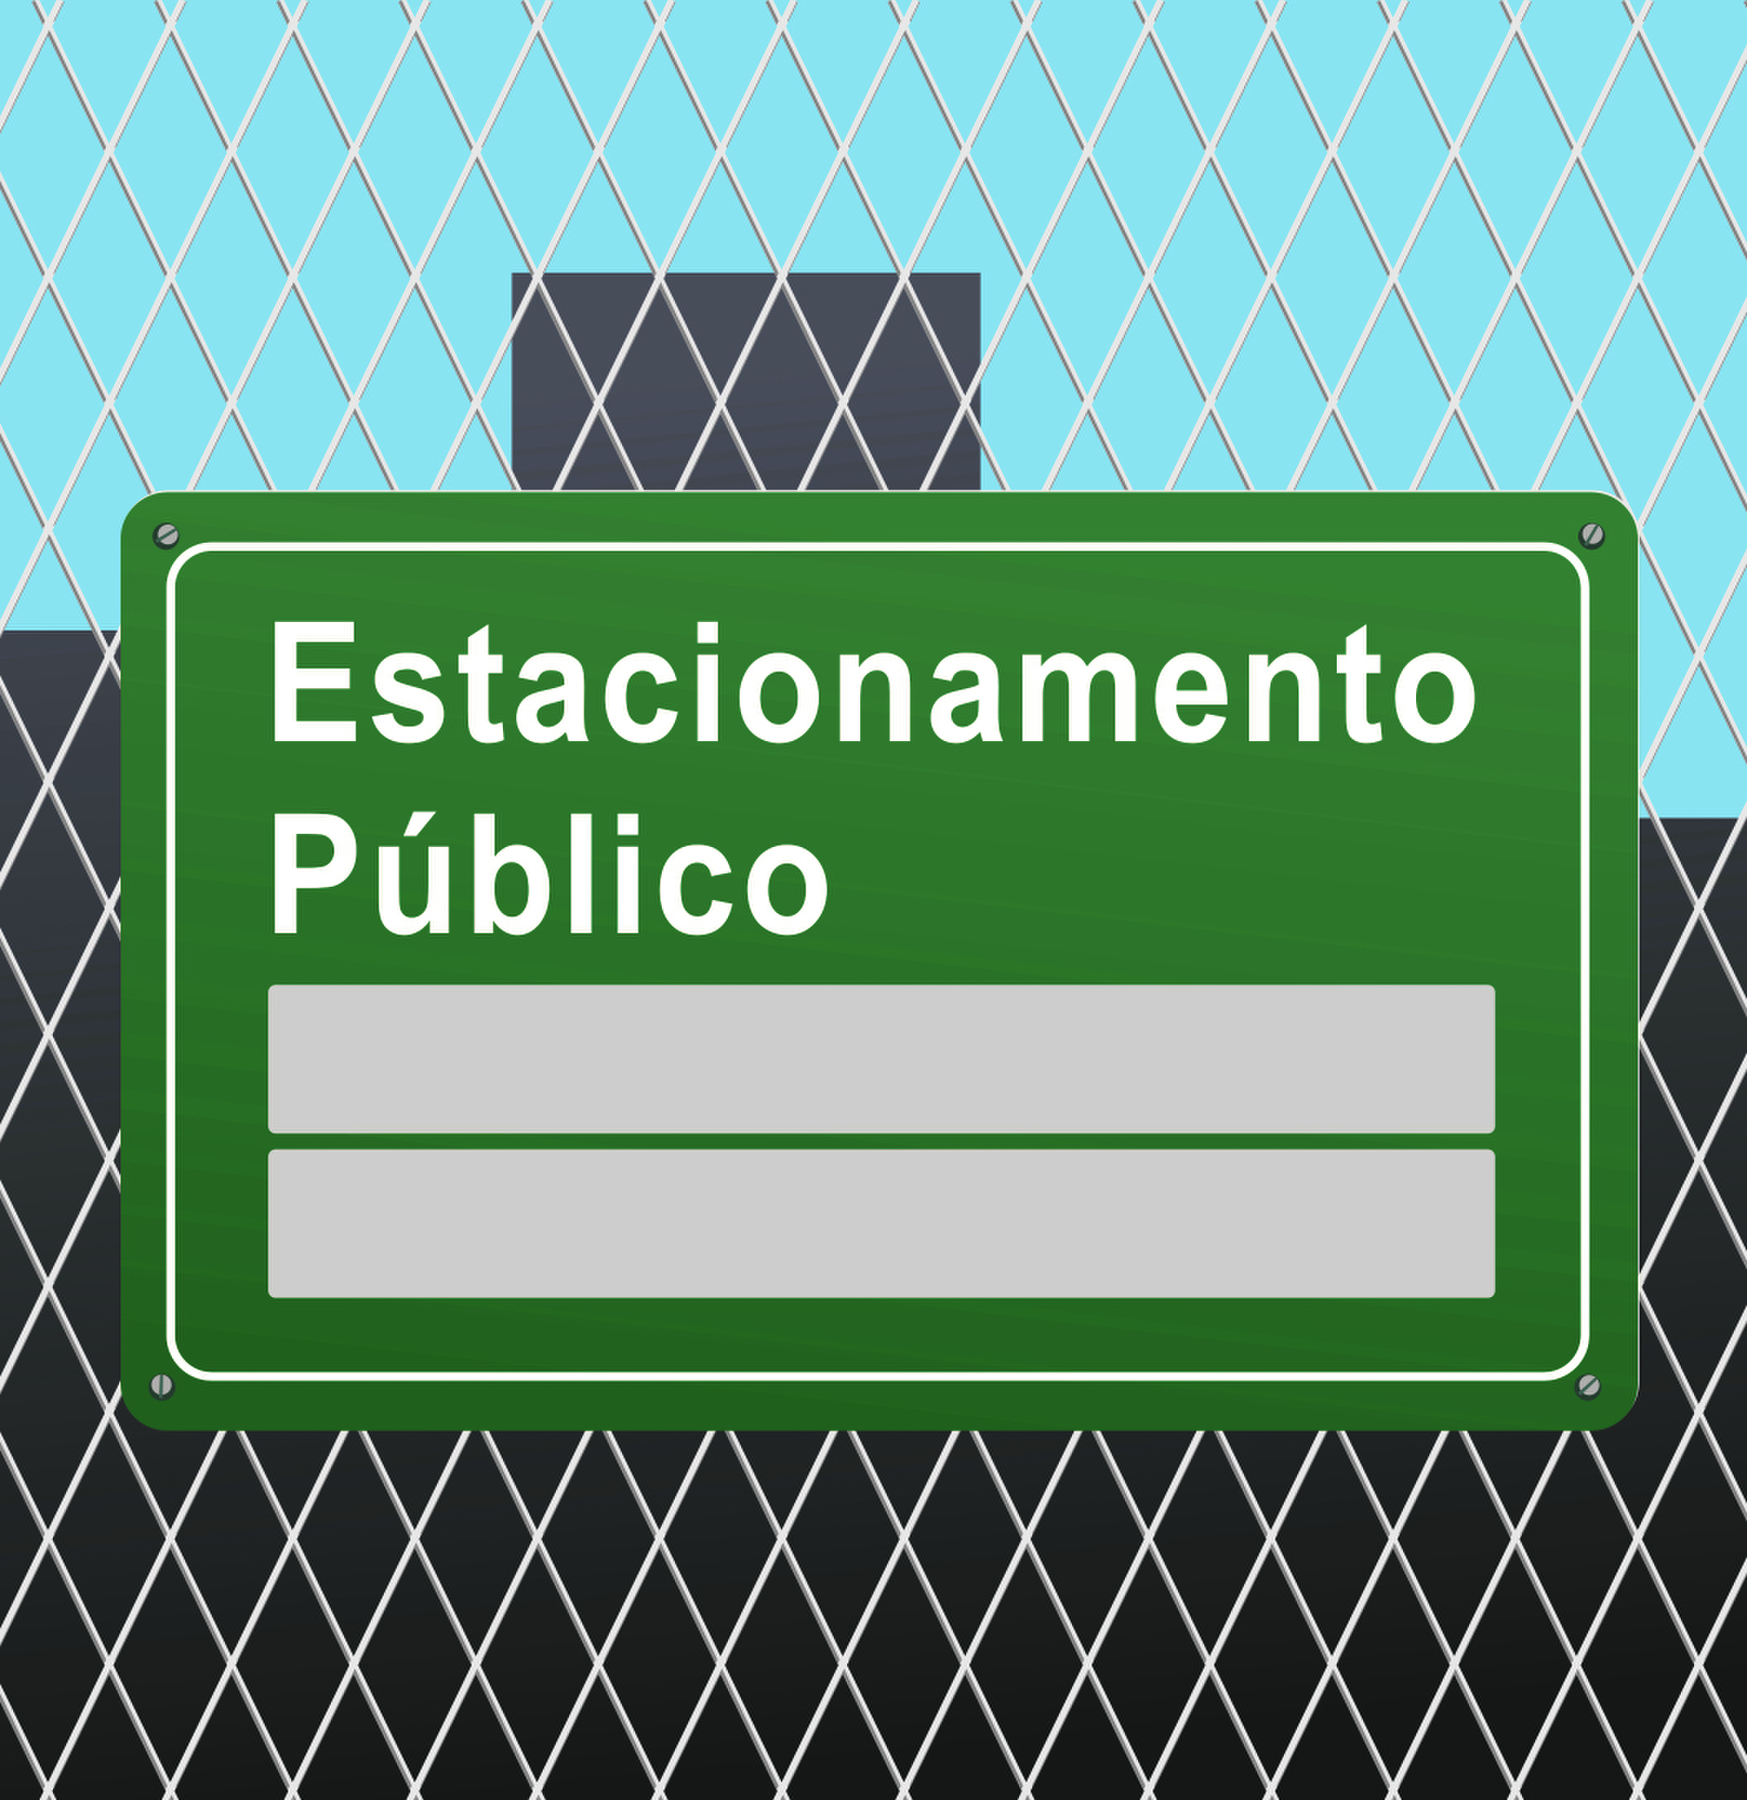 Ilustração. Grade em cinza, com placa pendurada em verde, com texto: Estacionamento Público. Espaço para resposta.